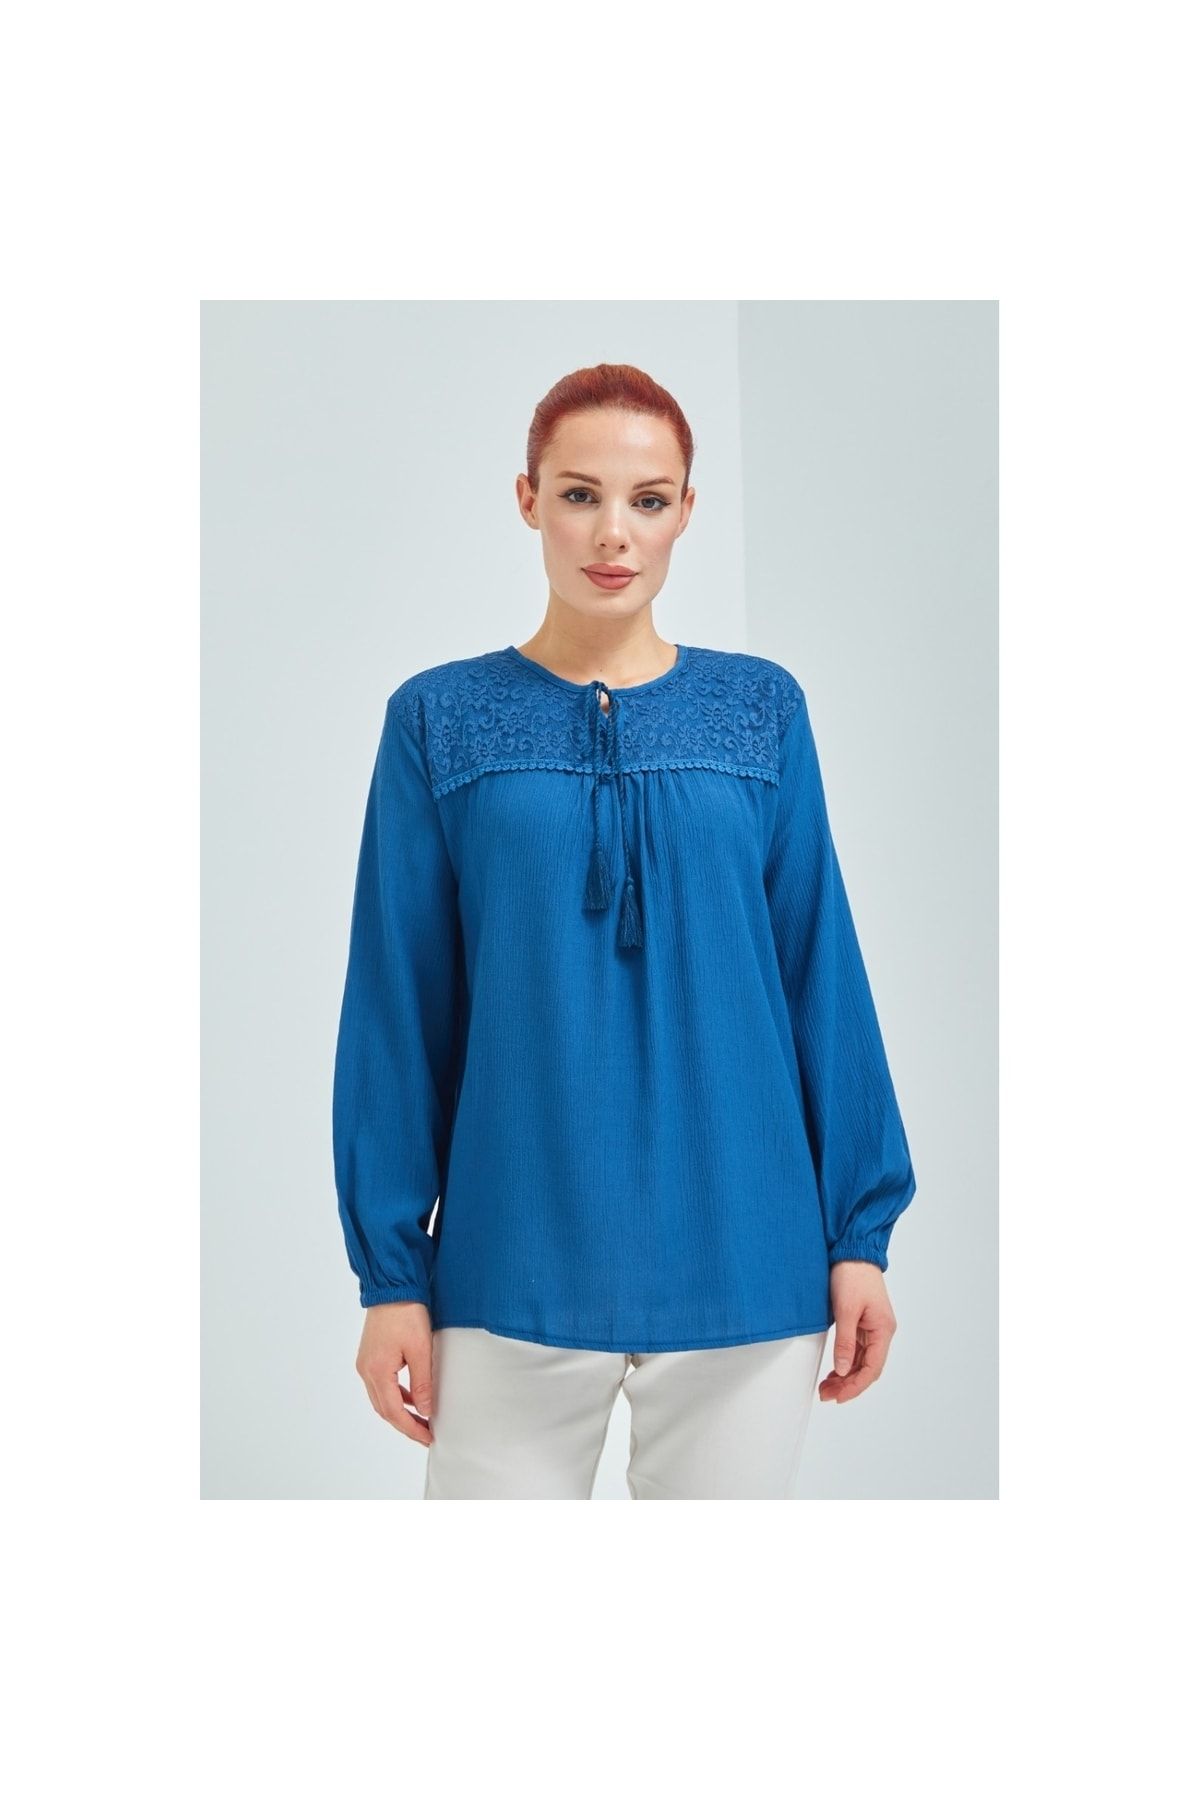 Fresh&Moda Kadın Indigo Mavisi Şile Bezi Anne Penye Bluz